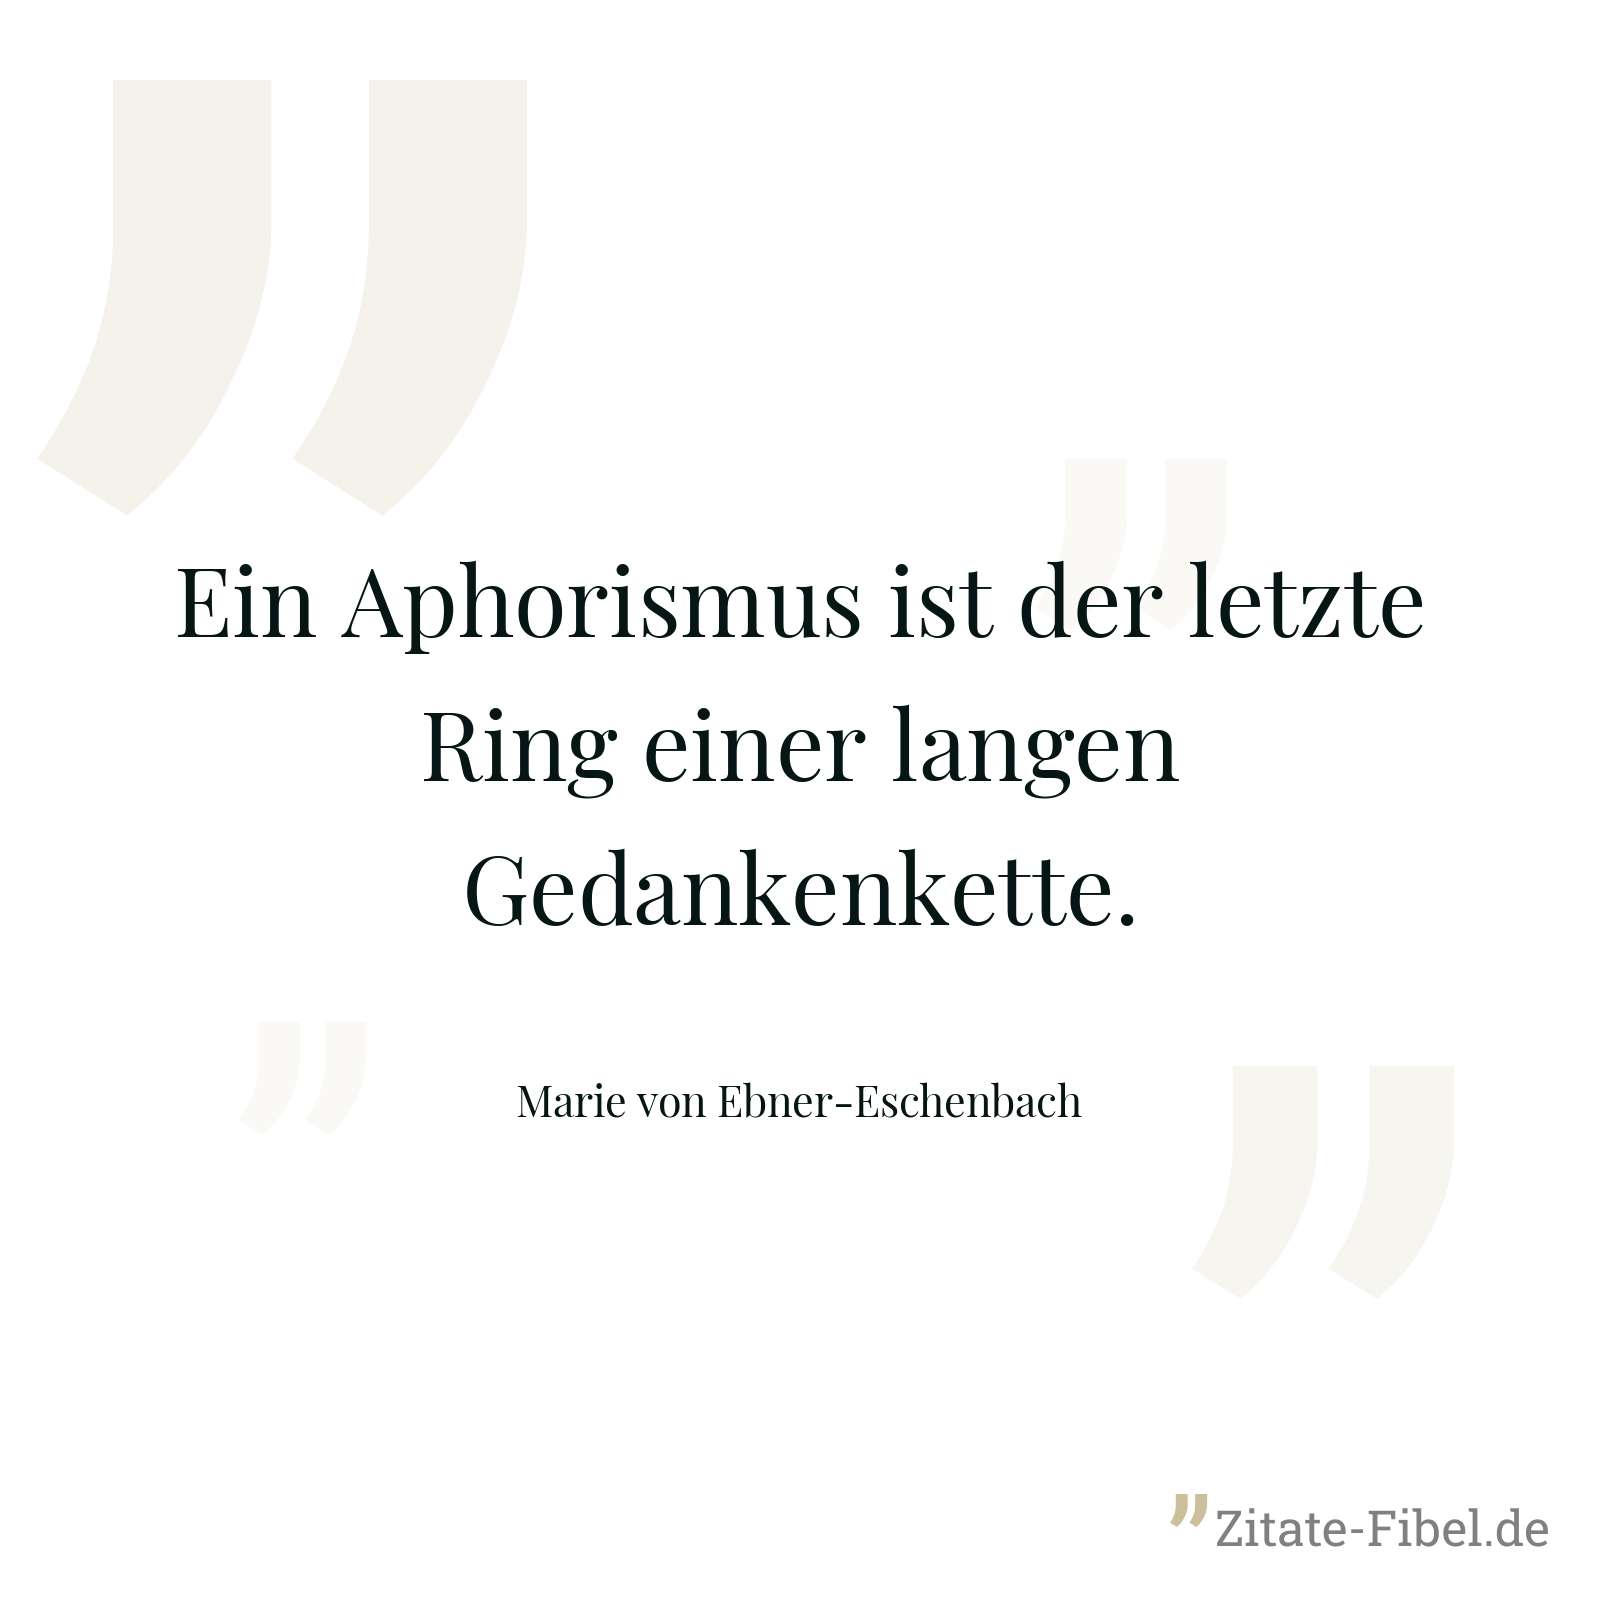 Ein Aphorismus ist der letzte Ring einer langen Gedankenkette. - Marie von Ebner-Eschenbach